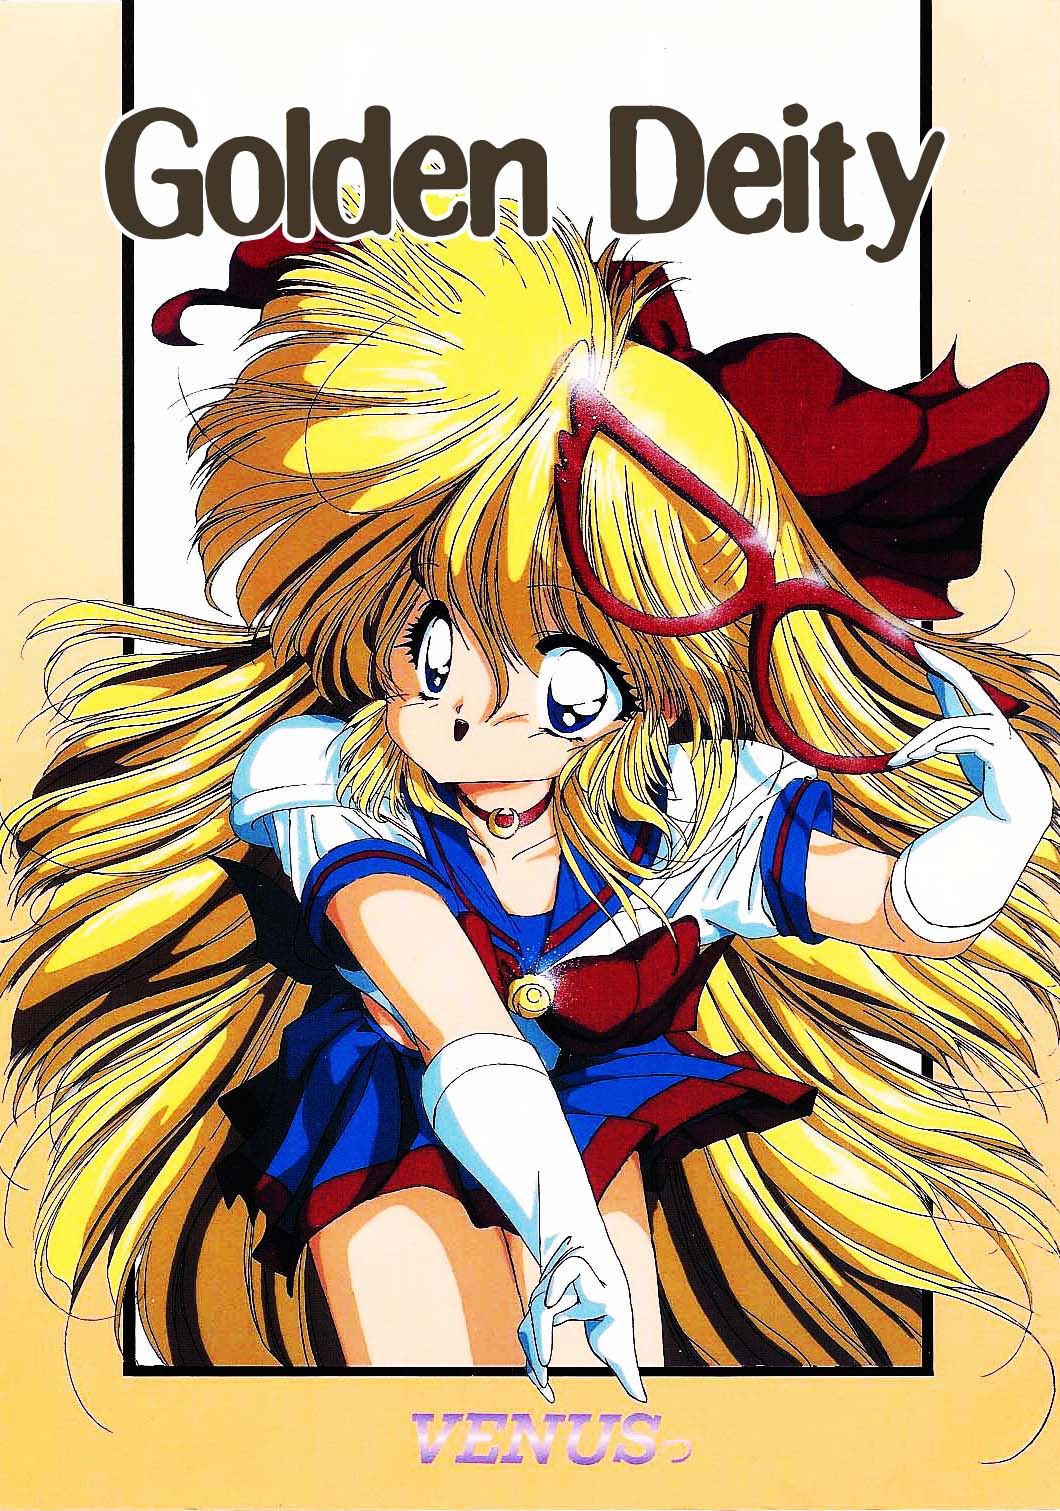 Hakai Kyoudan Kisaragi Kihiro Golden Deity Sailor Moon English Miss Dream 00